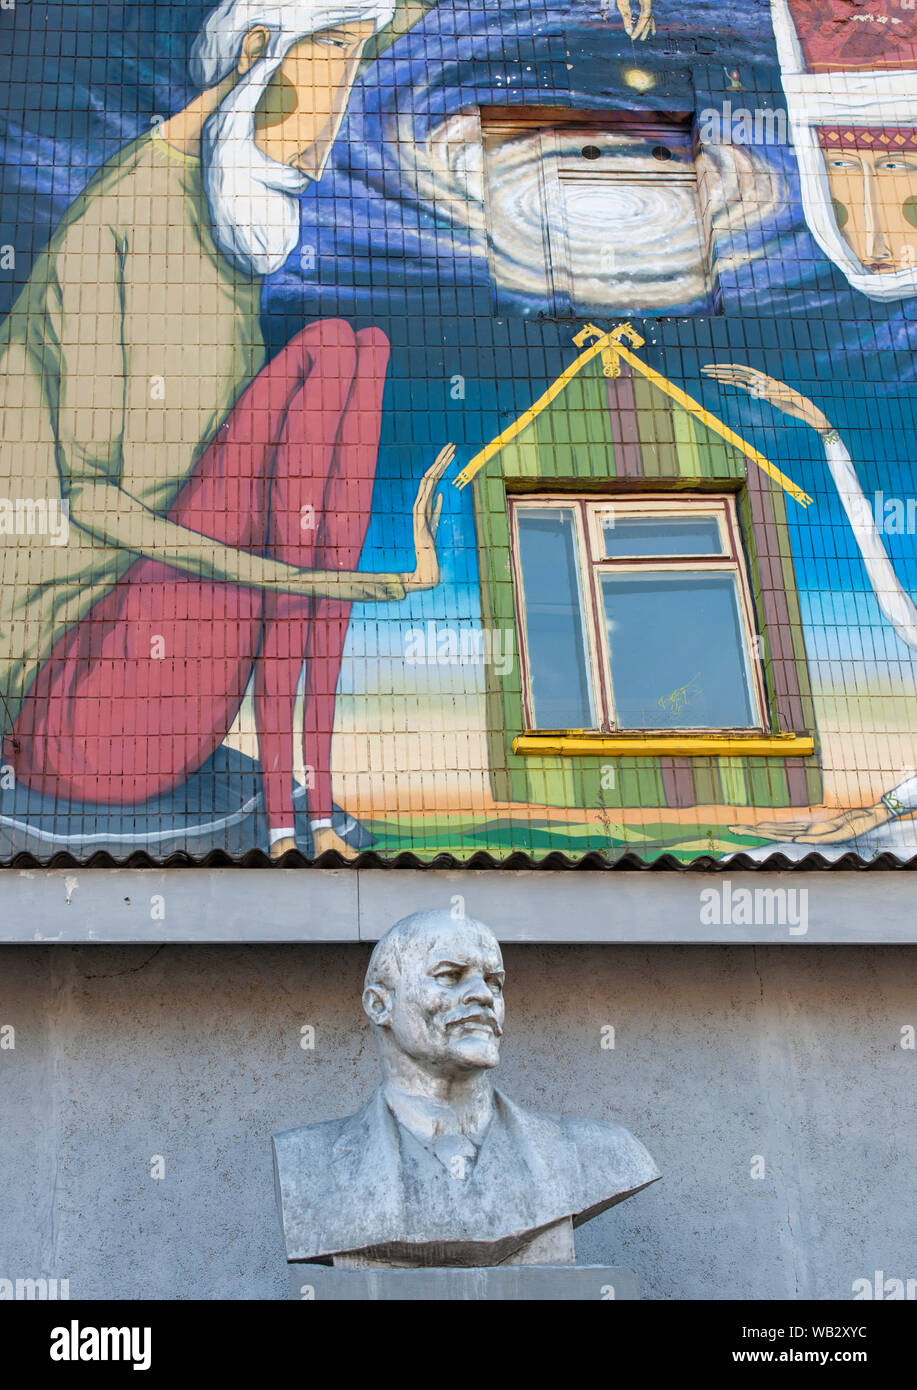 A bust of Lenin against a background of graffiti street art on a building on Oktyabrskaya Street in Minsk, Belarus. Stock Photo